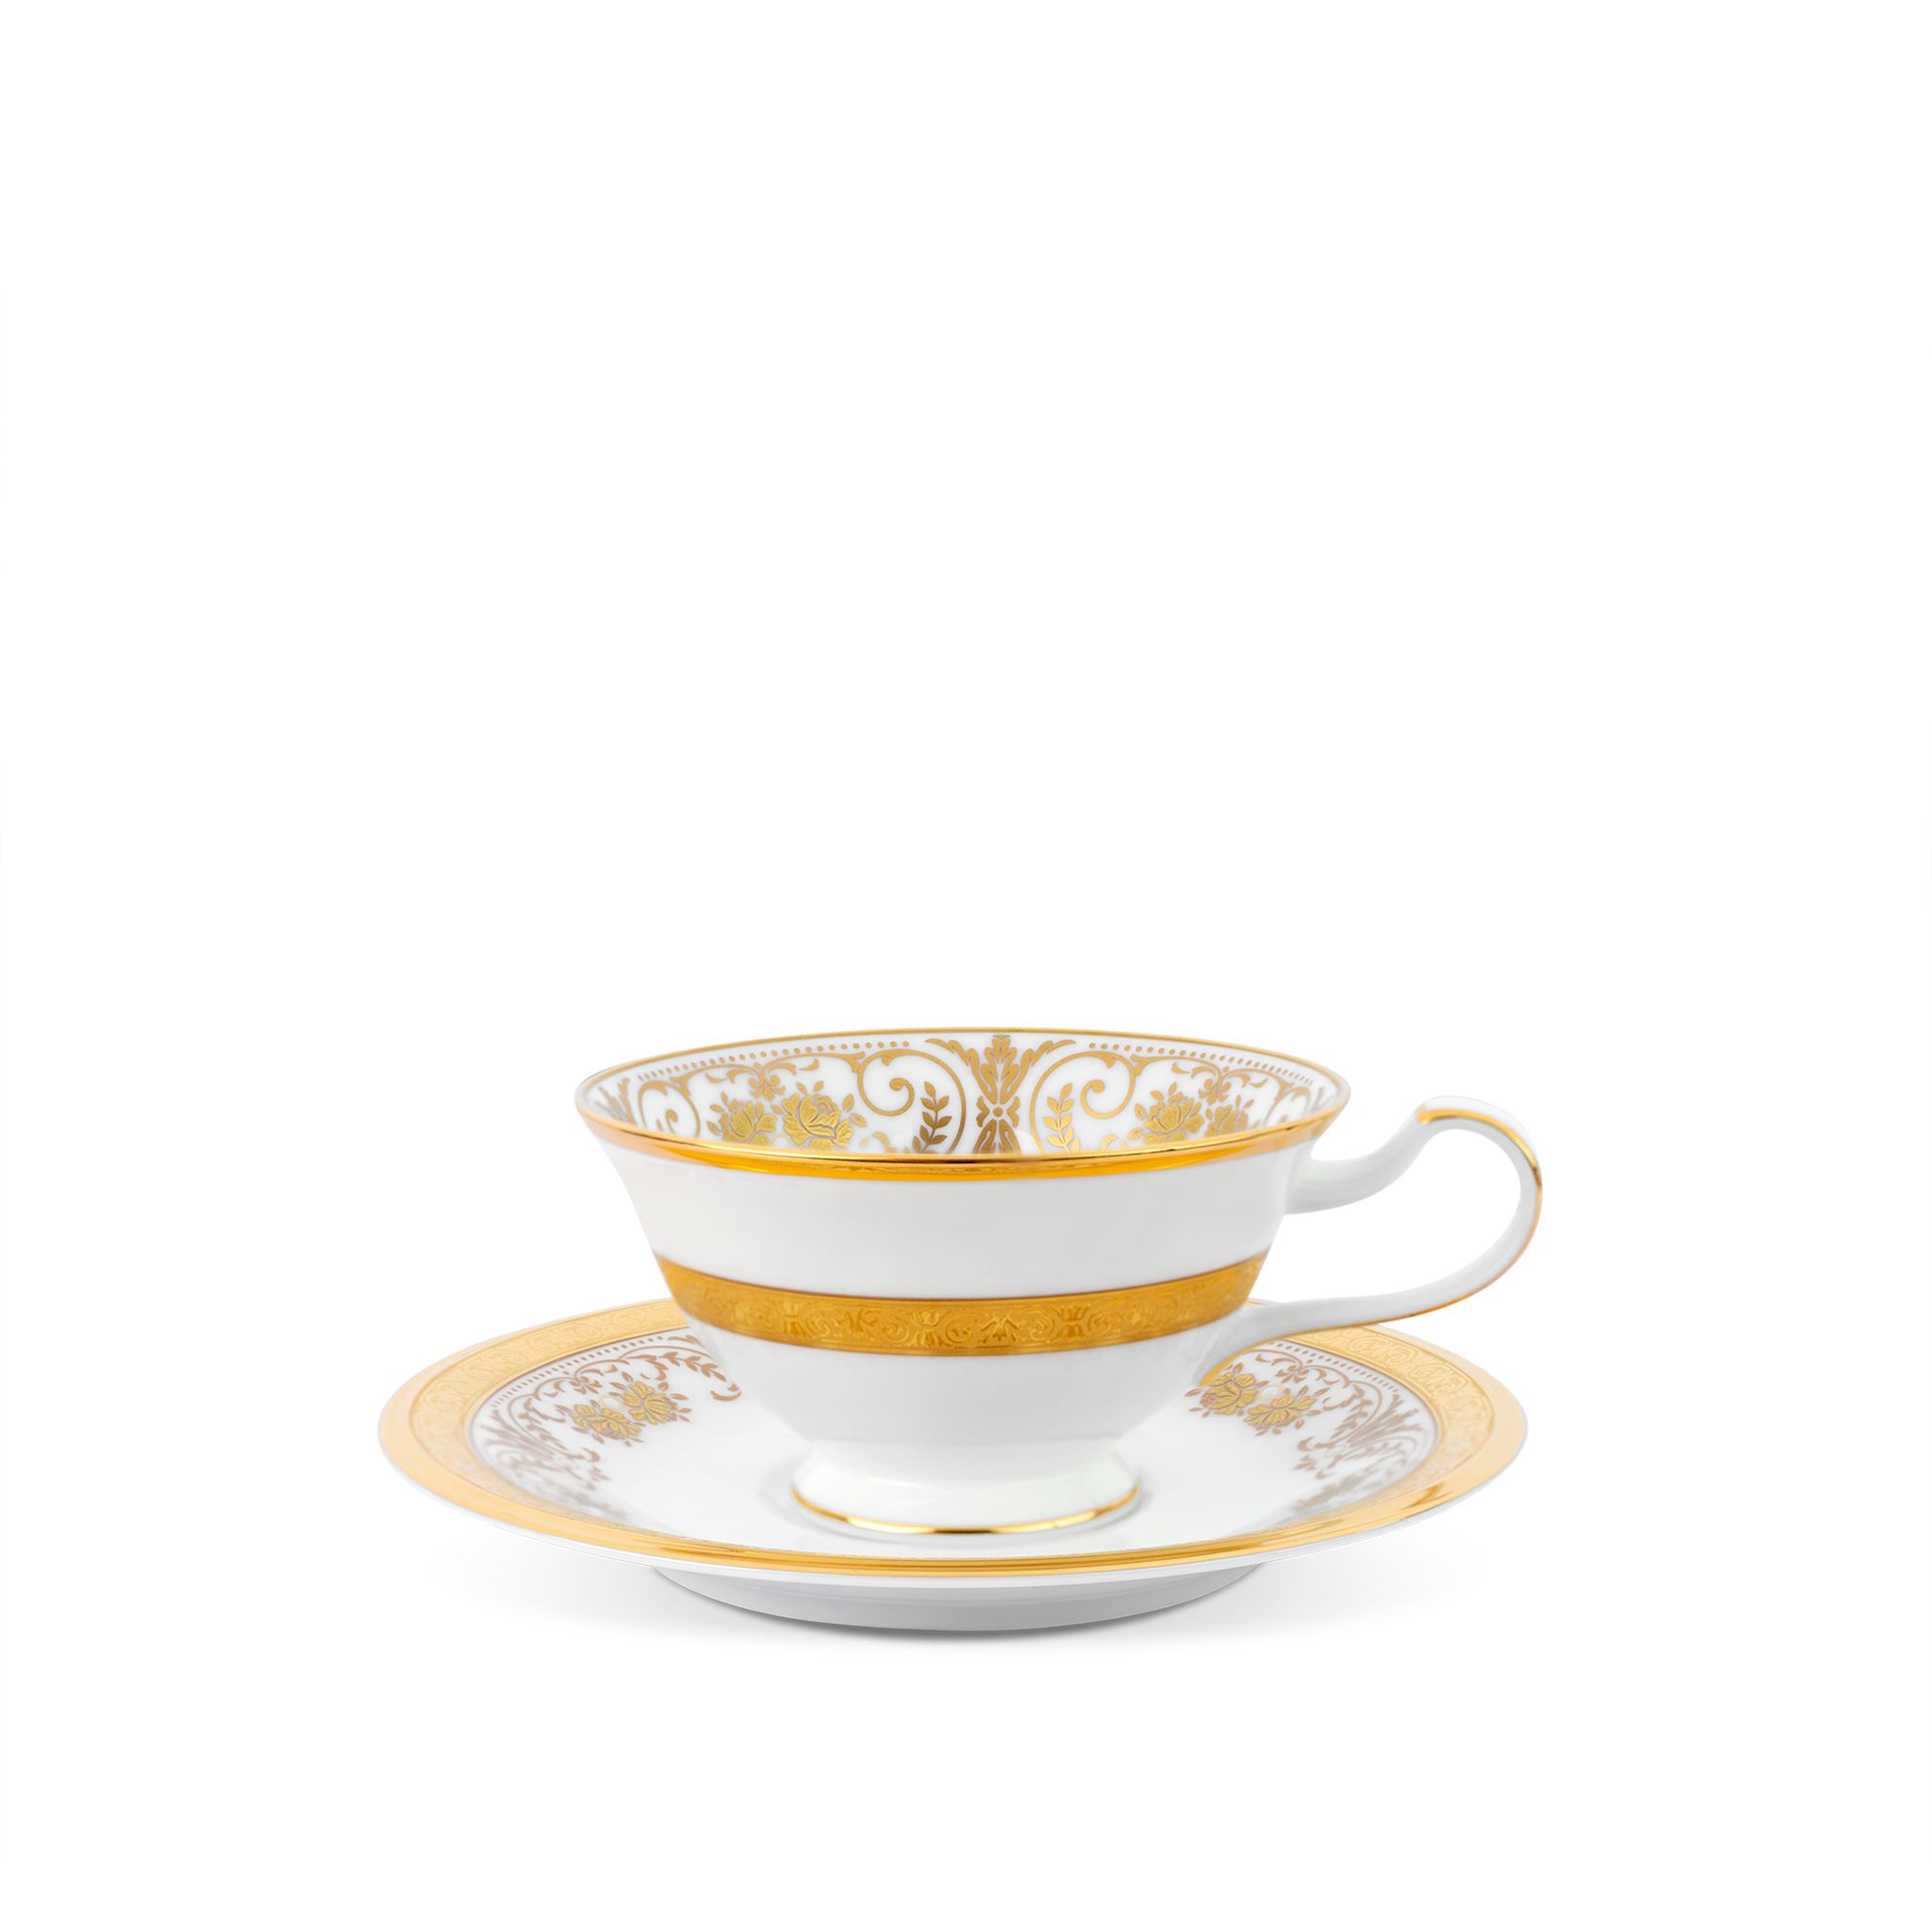  Tách trà / coffee (dáng loe) dung tích 220ml kèm đĩa lót | Georgian Palace 4858J-T59587 